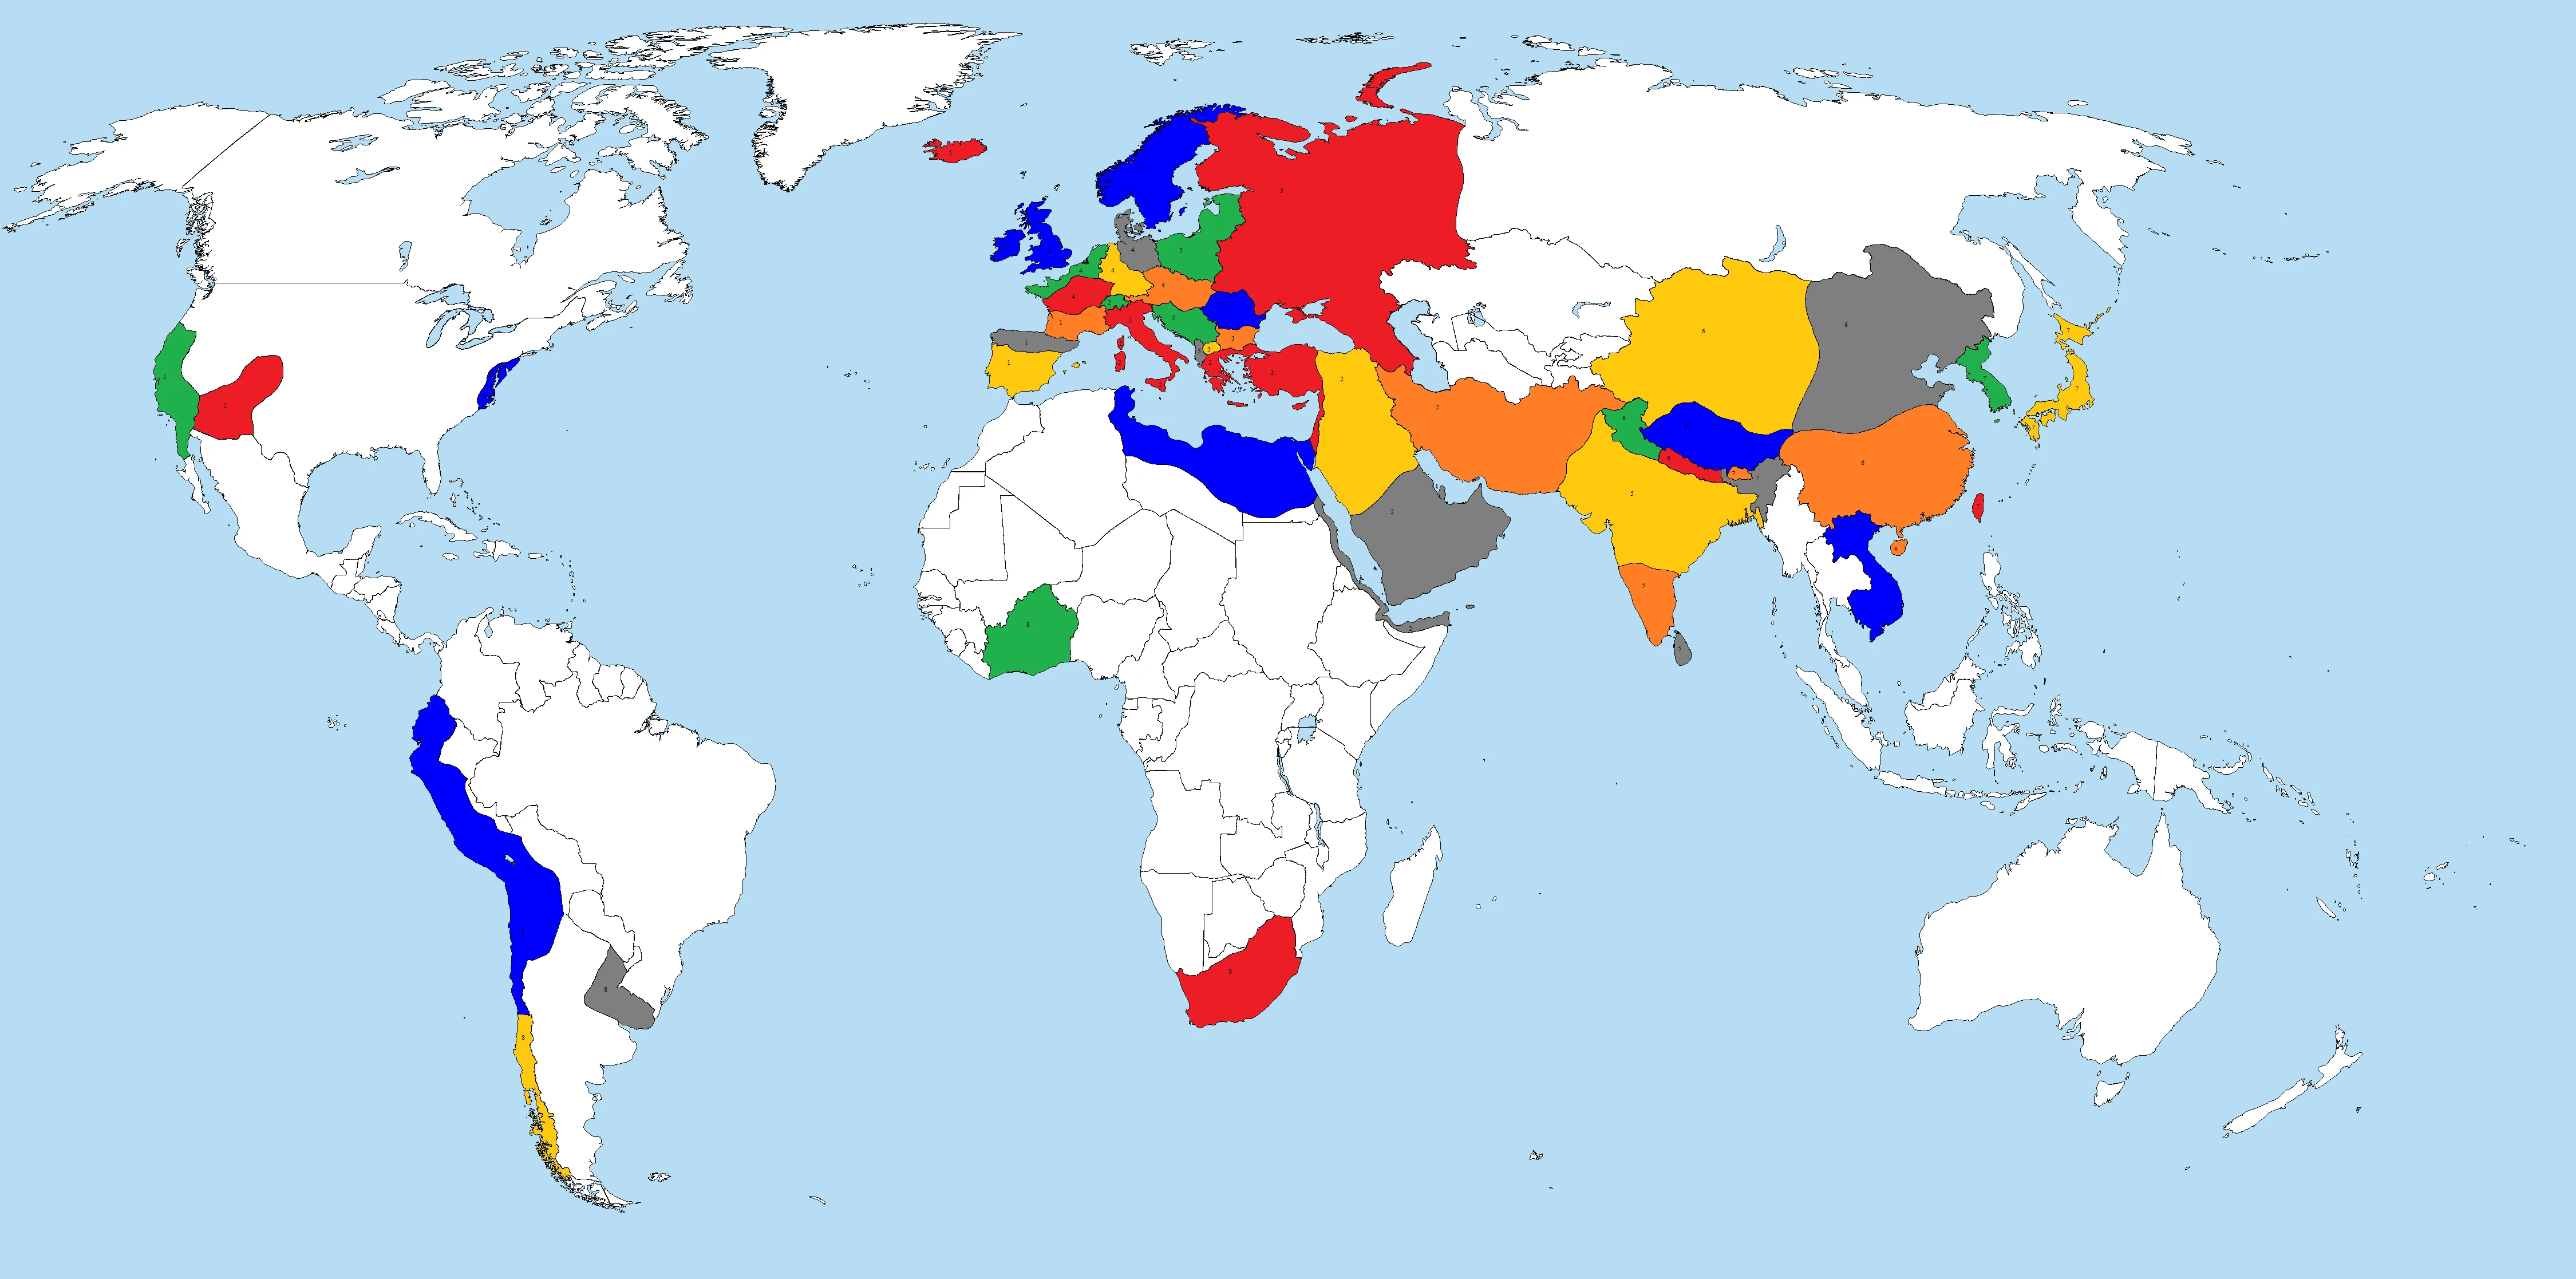 map of fallout world